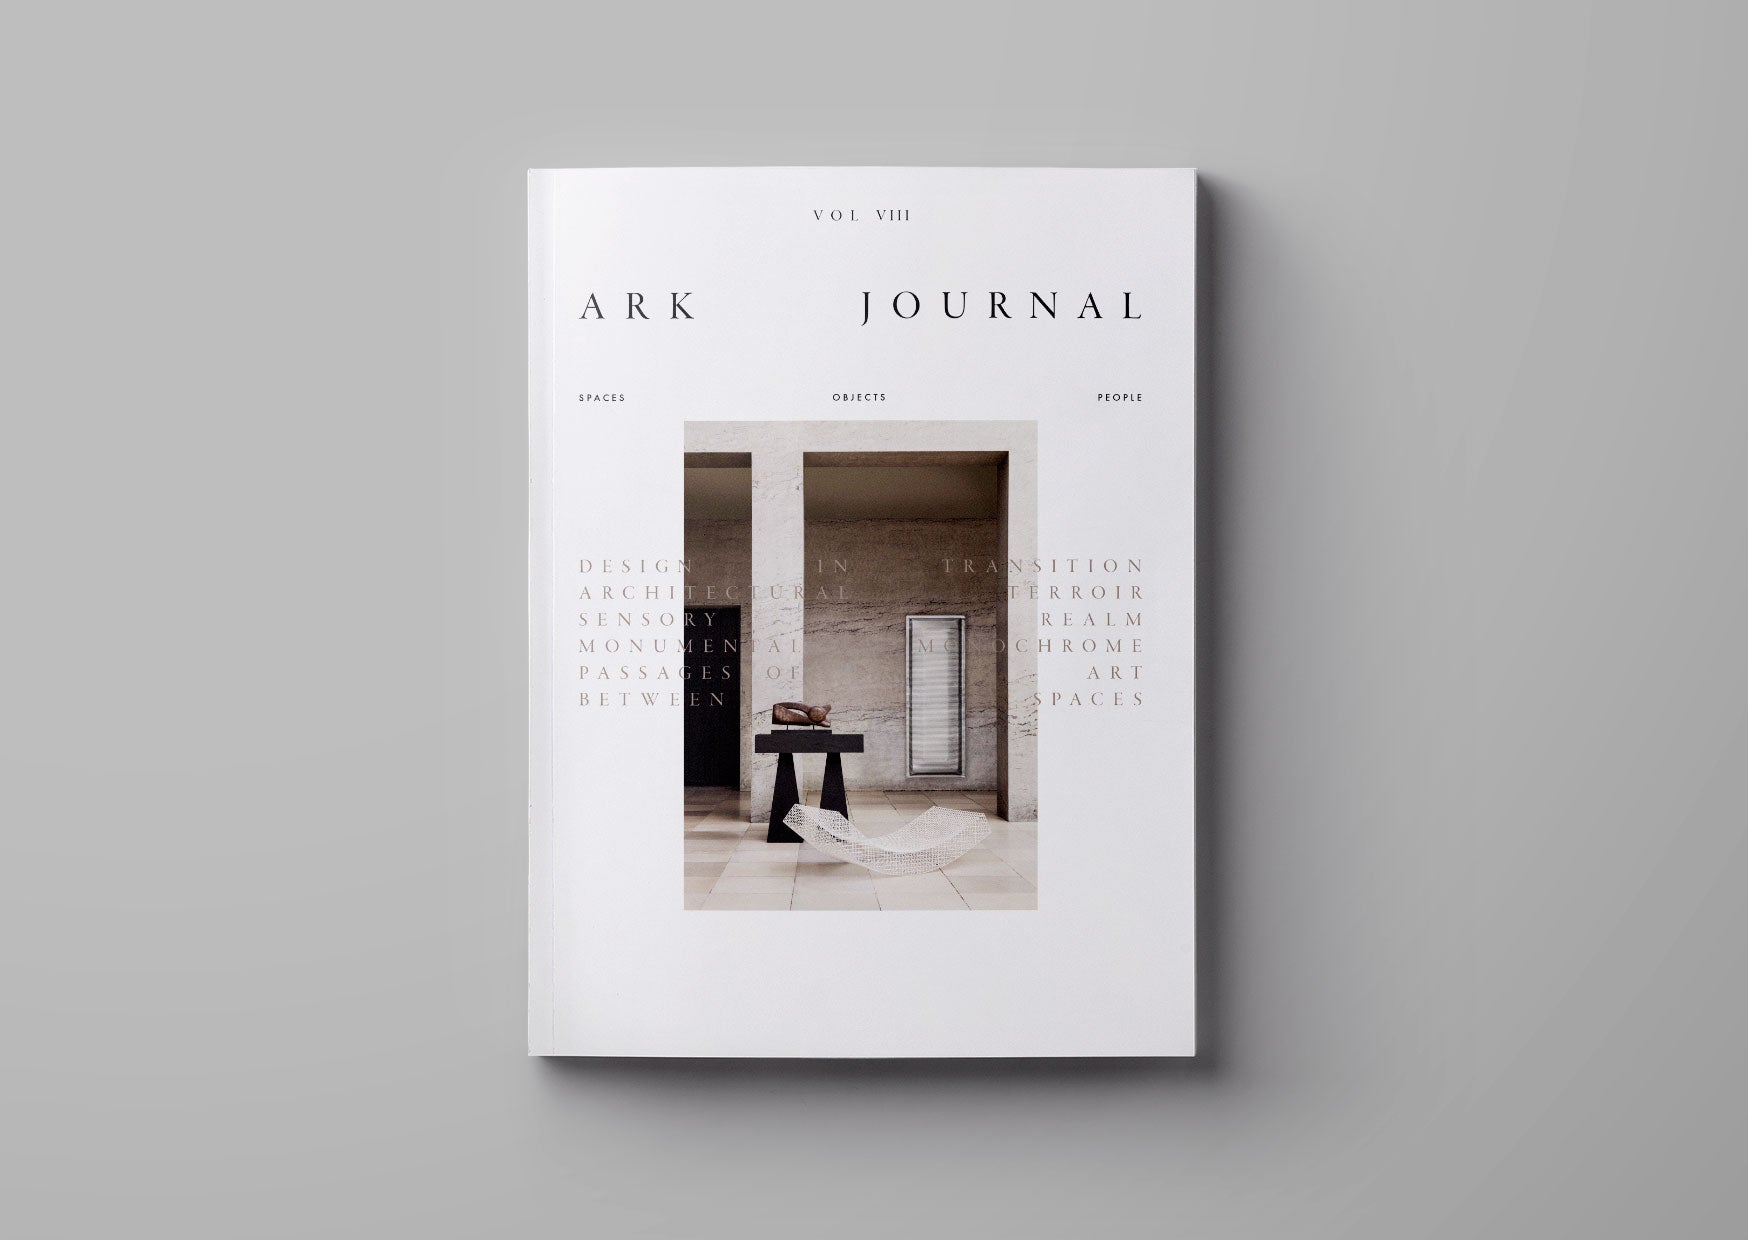 Ark Journal- VOLUME VIII AUTUMN/WINTER 2022